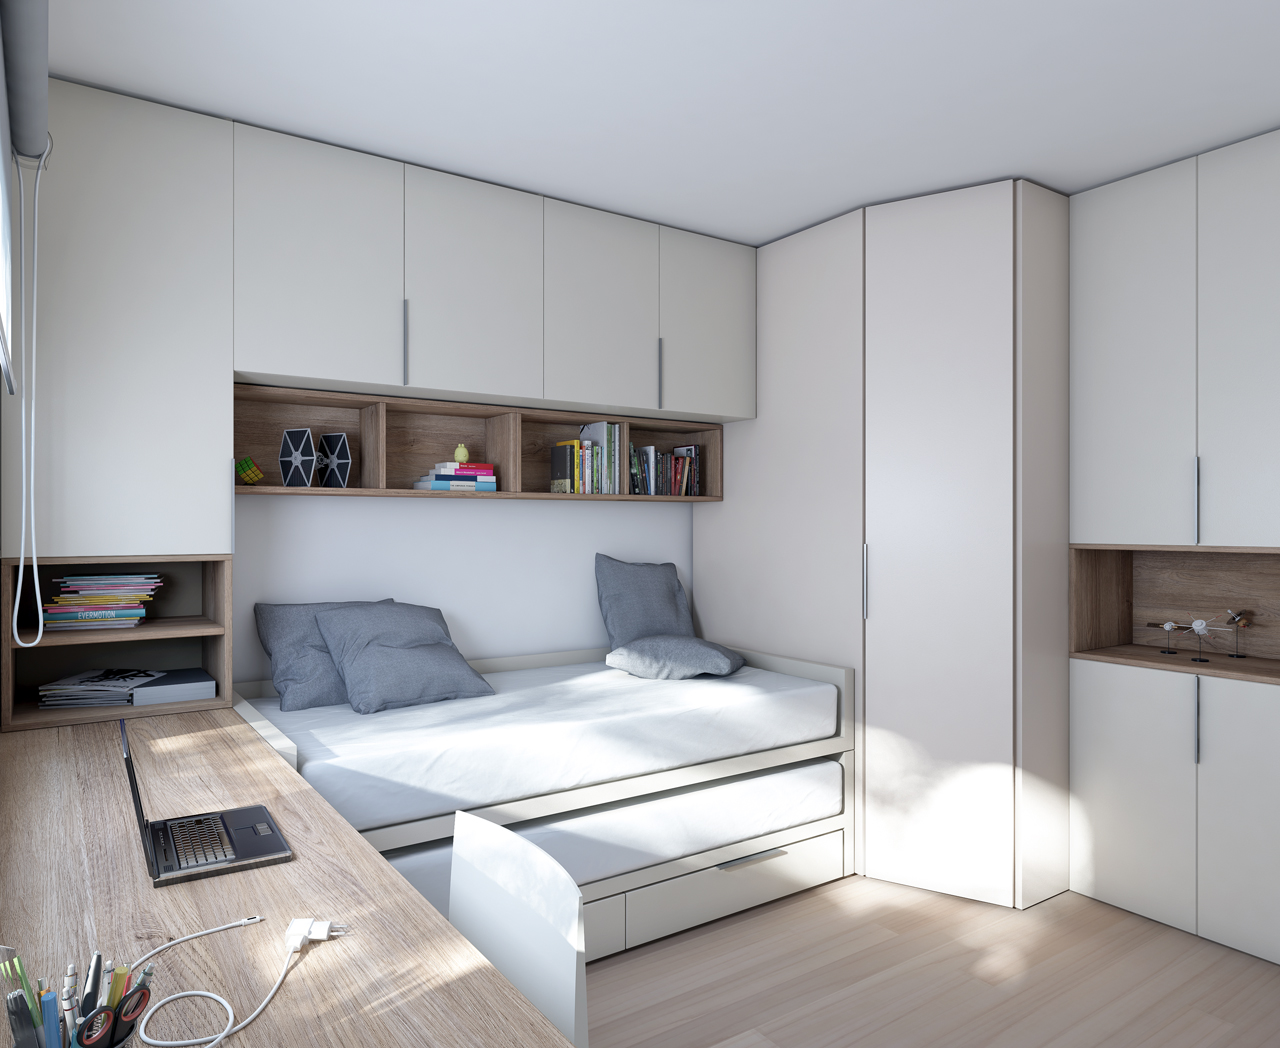 Dormitorio juvenil compacto con dos camas y cajones • STAY 27